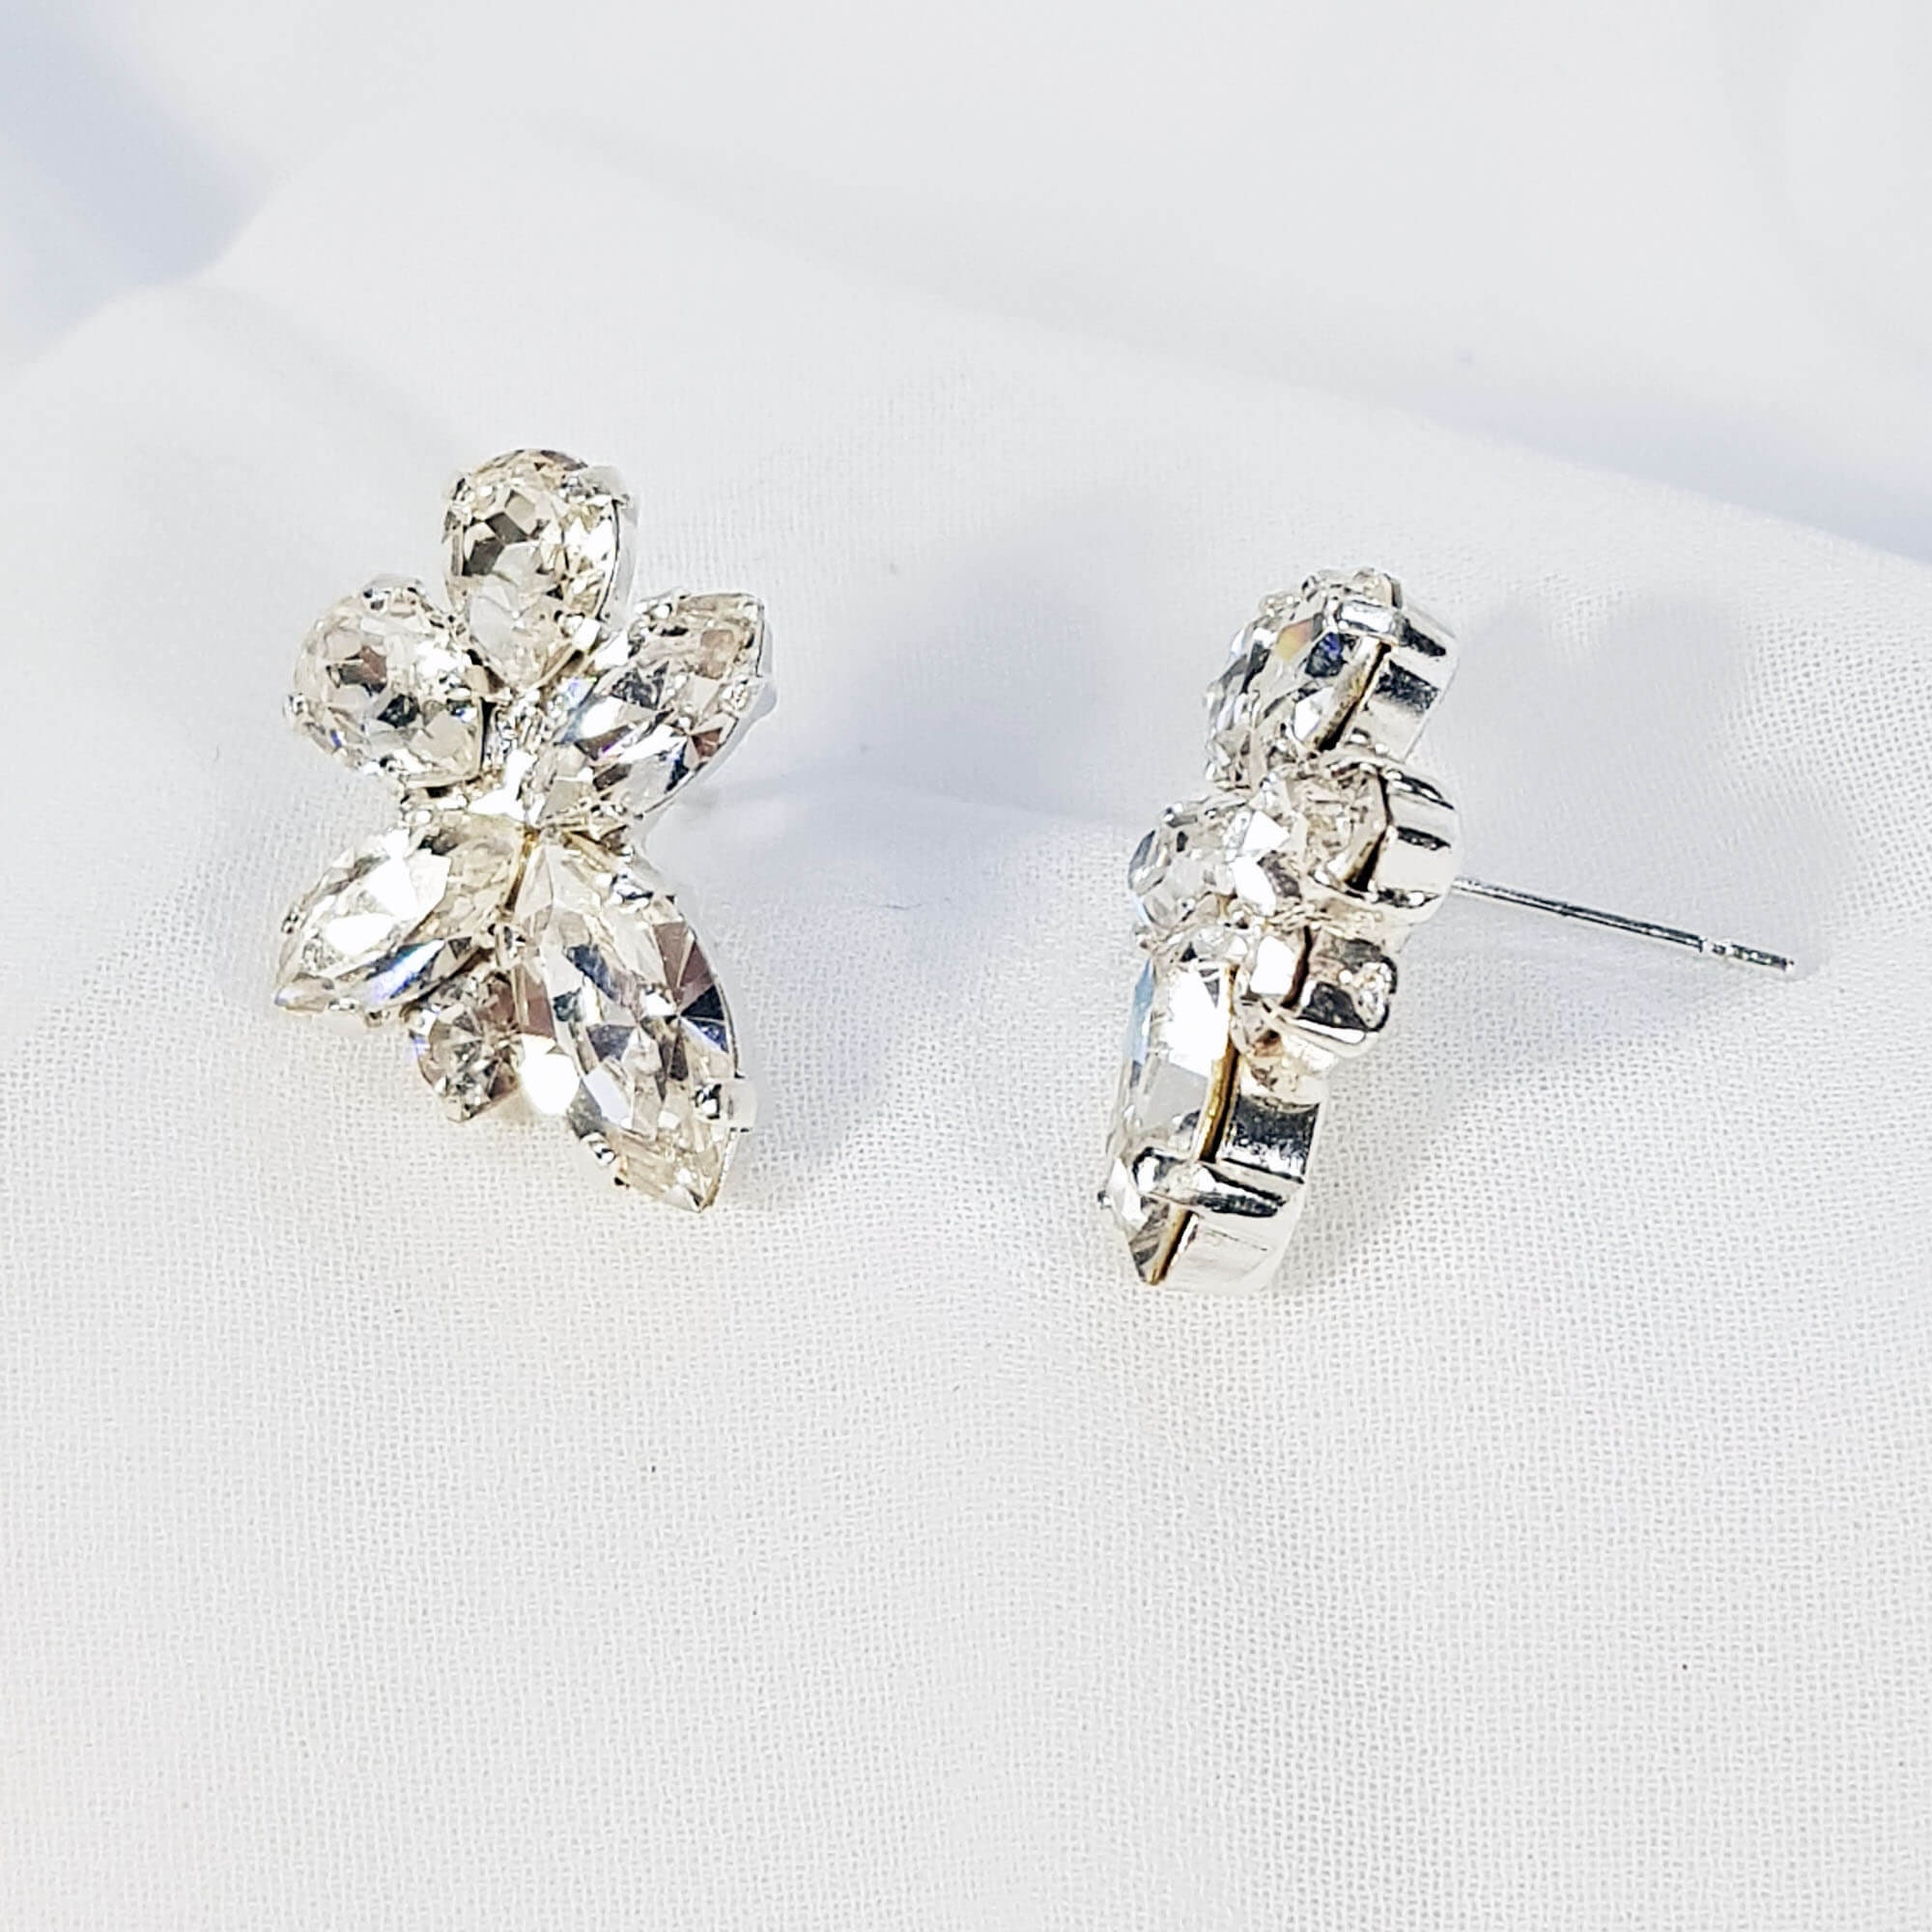 White Crystal Bridal Earrings Stud Earrings Wedding | Etsy